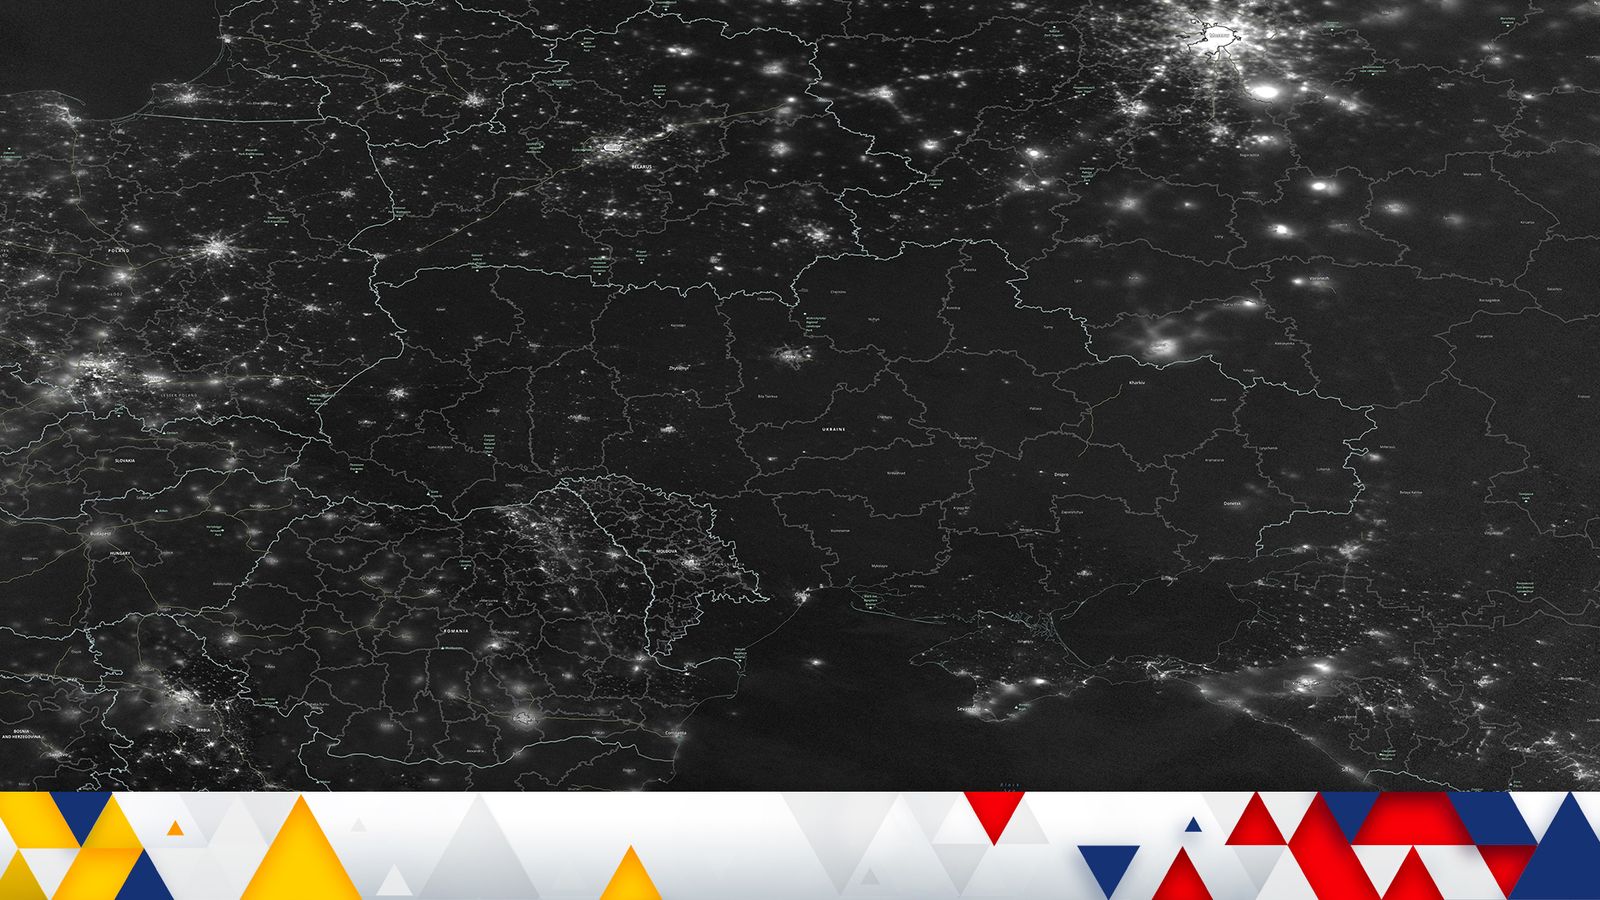 Потрясающий спутниковый снимок показывает масштабы нехватки электроэнергии в Украине после российских ракетных ударов |  Новости мира